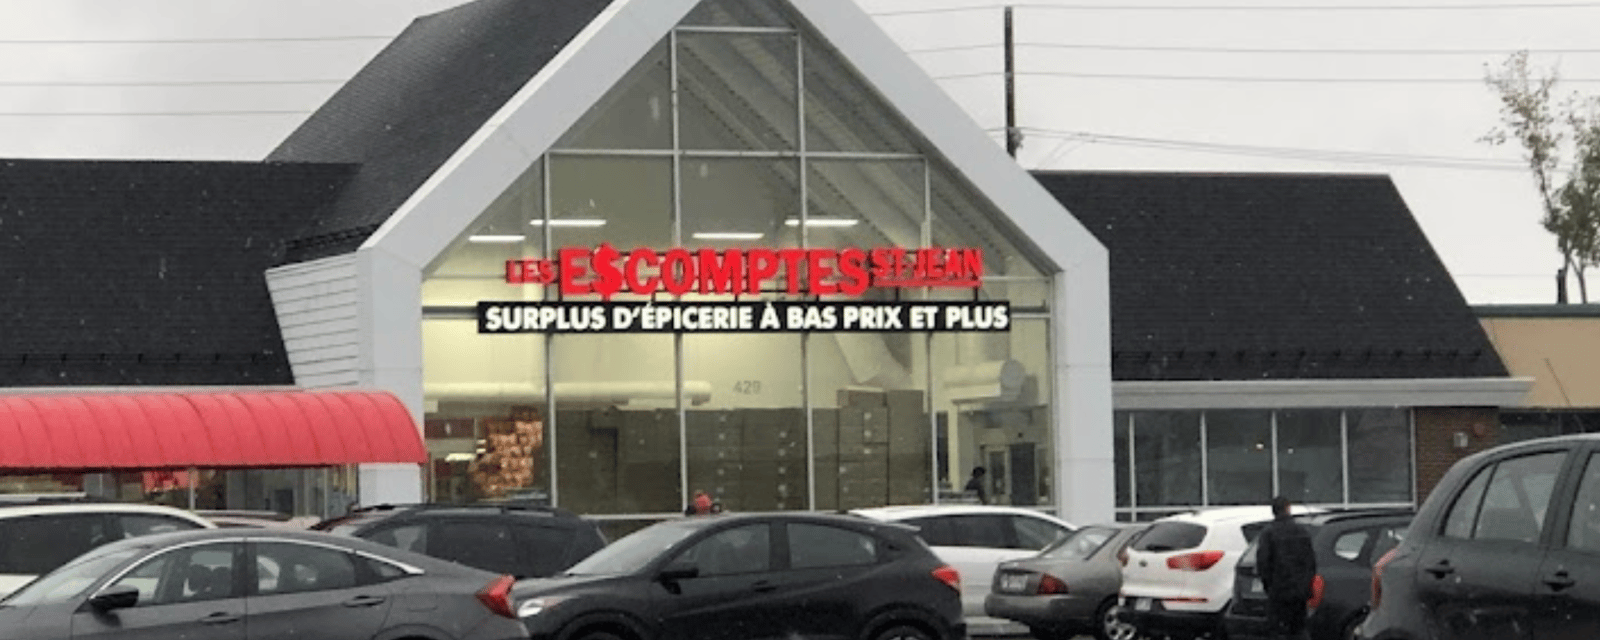 Une nouvelle épicerie de bas prix fait son arrivée à Montréal